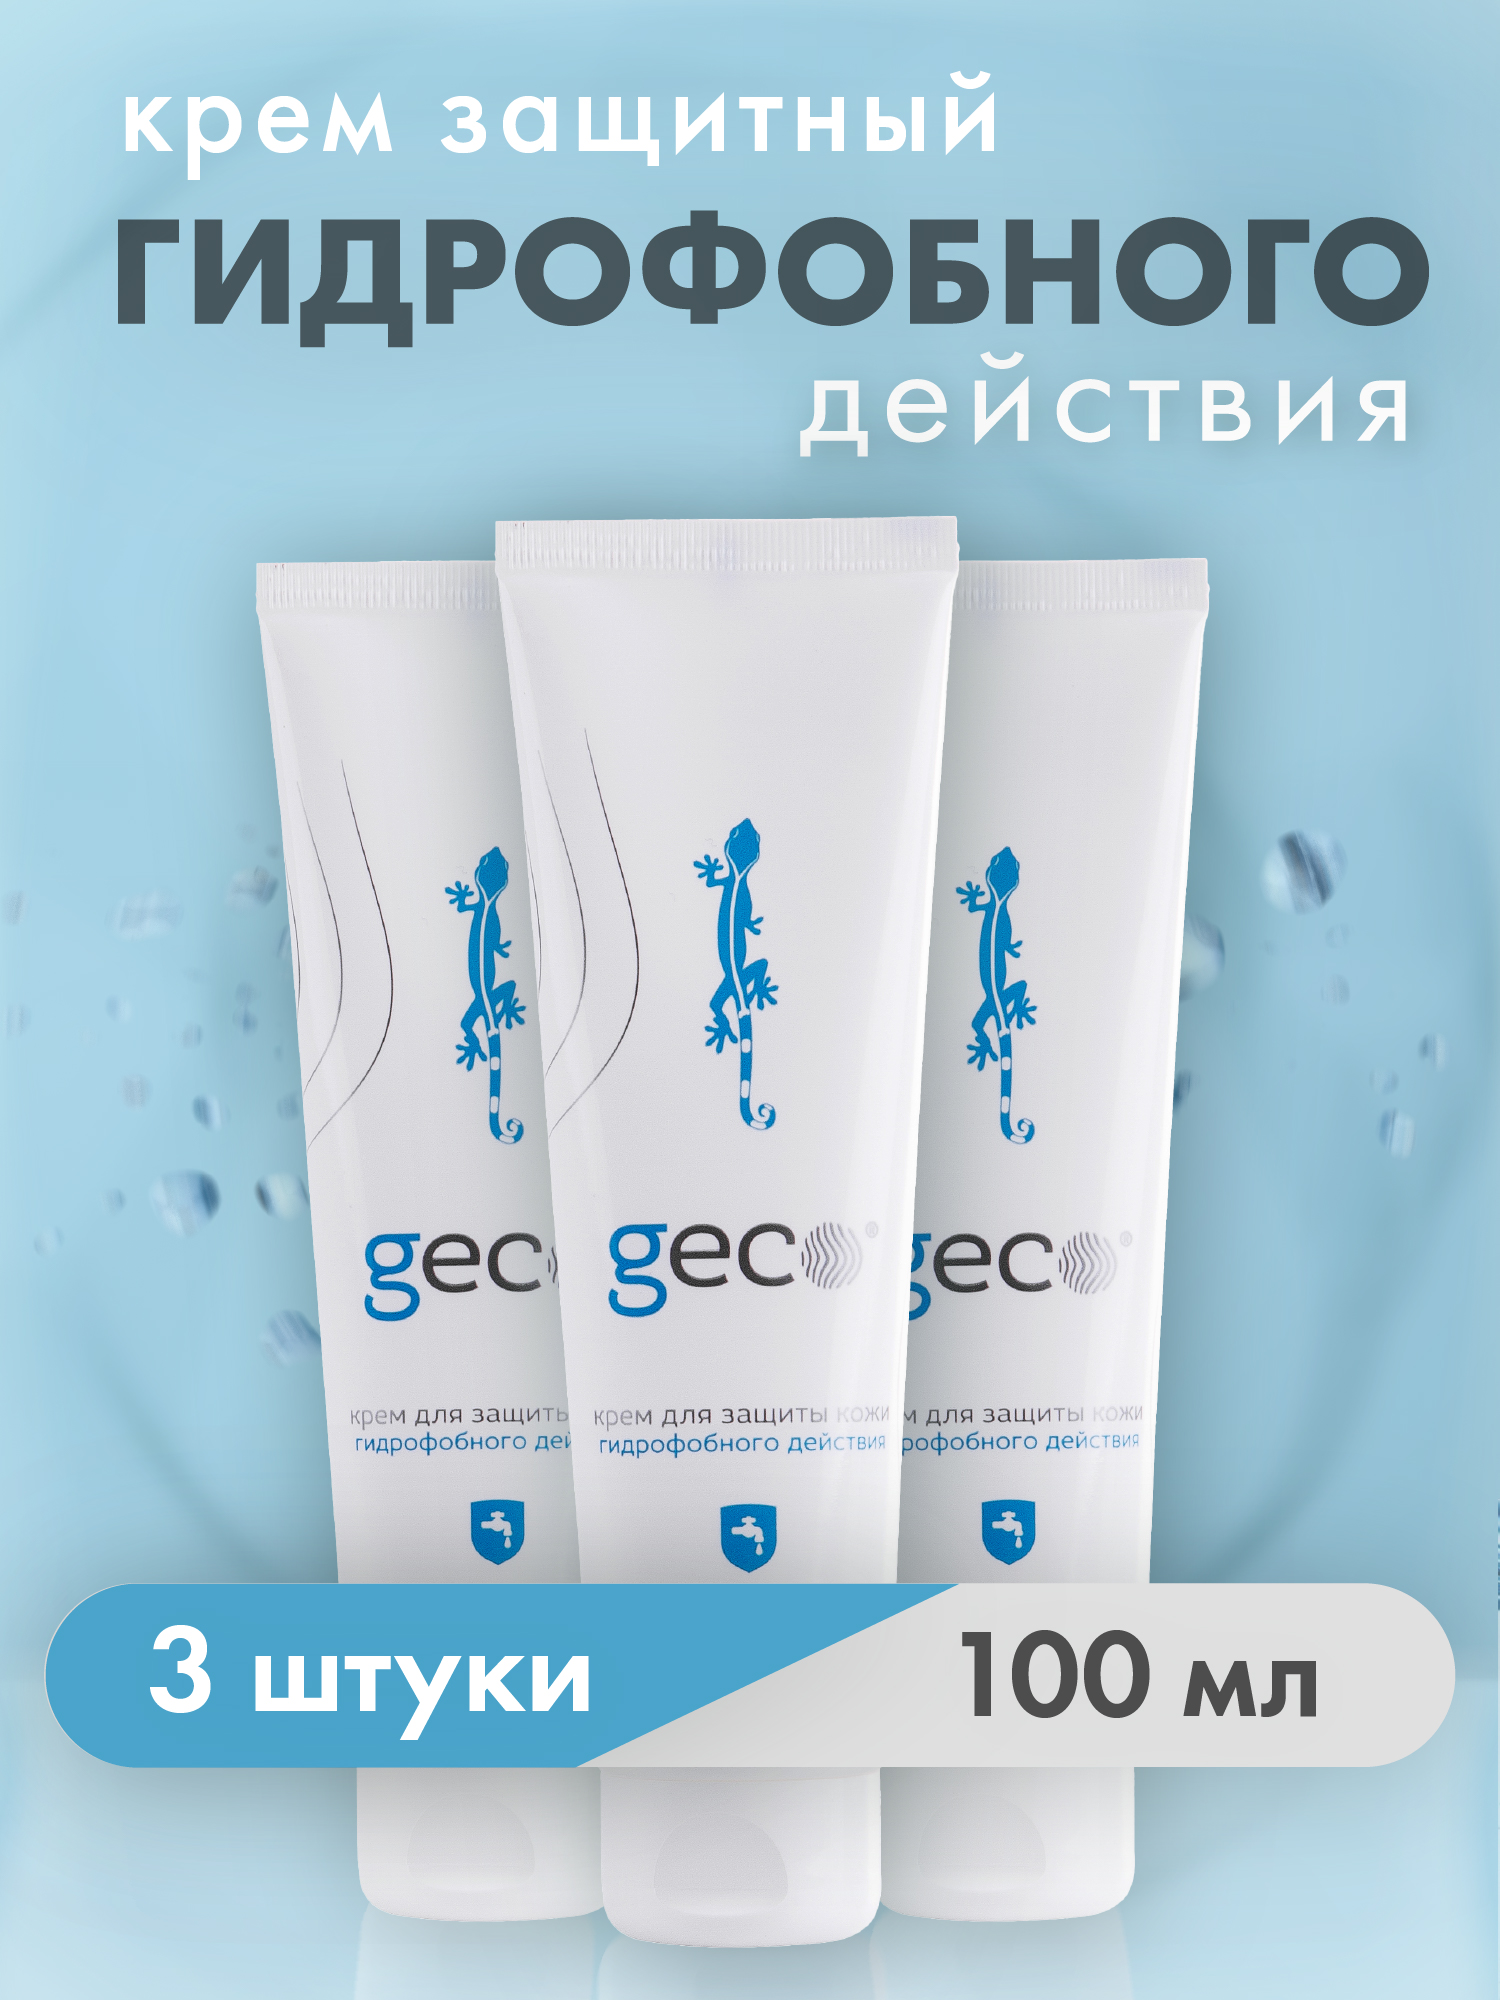 Крем GECO гидрофобного действия для защиты кожи рук  3 ШТ туба100 мл